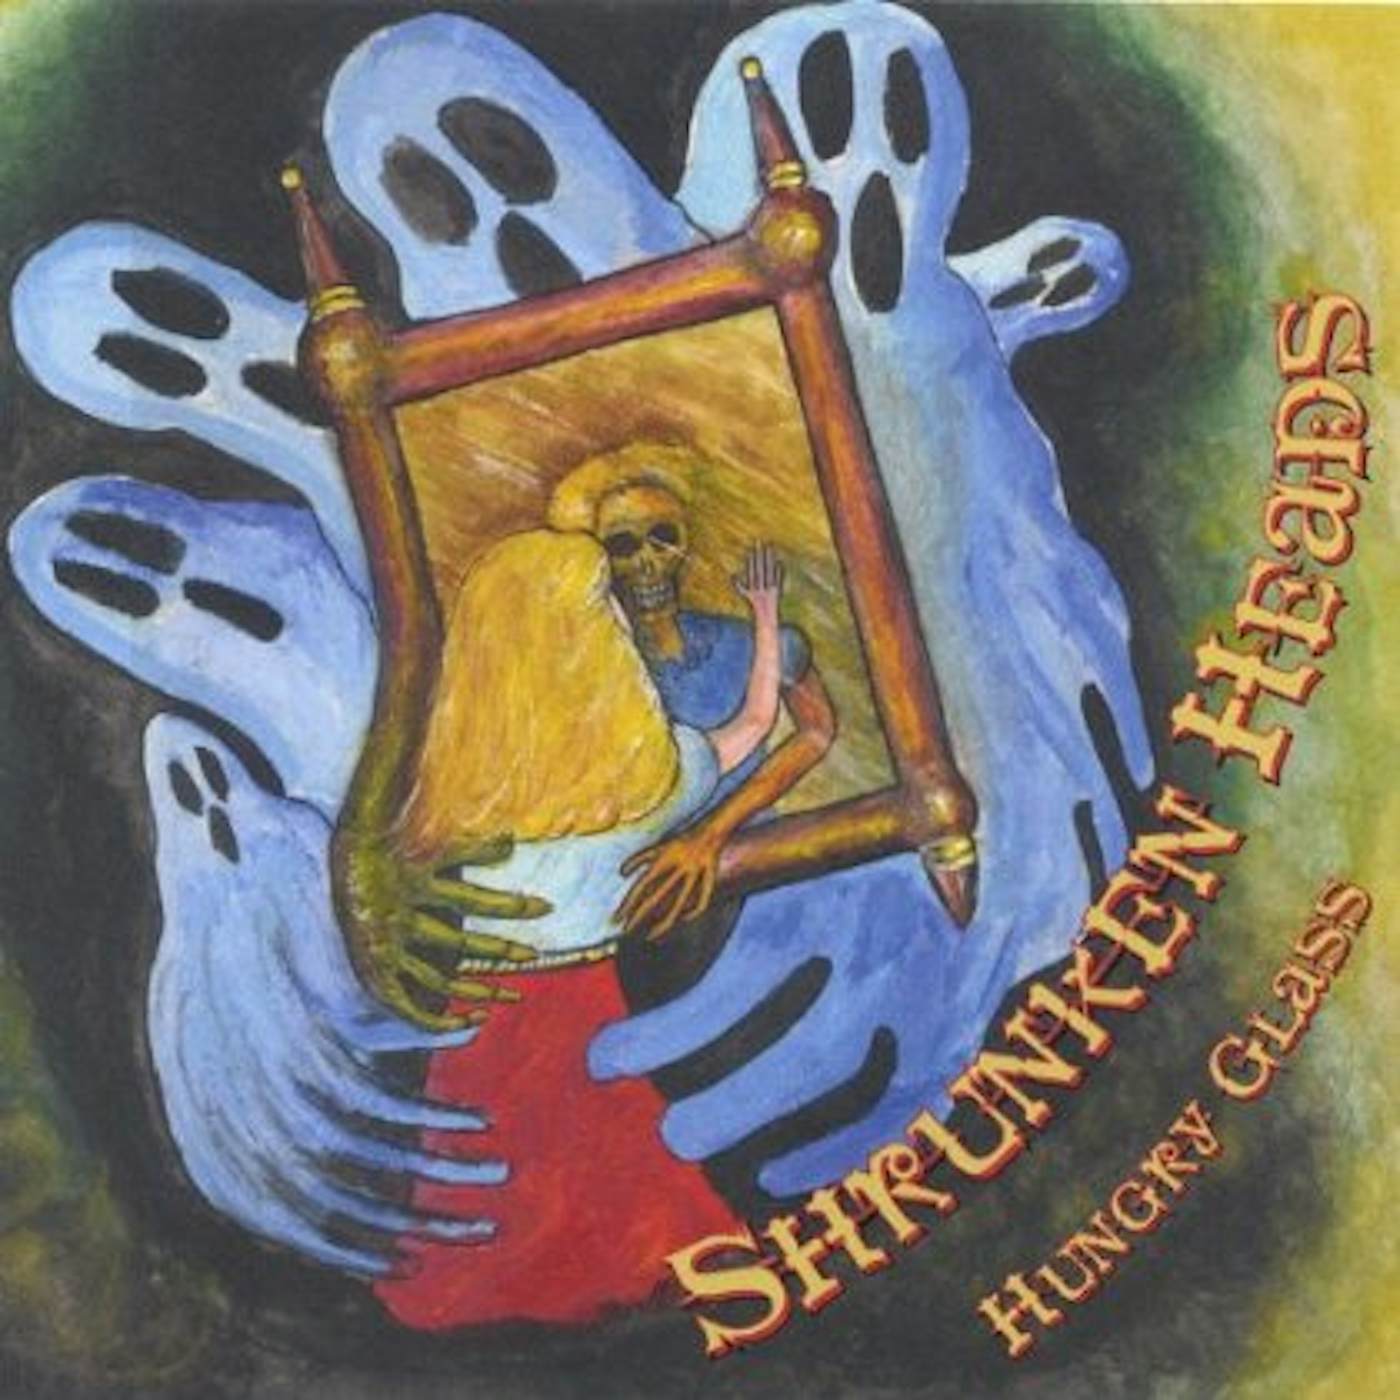 The Shrünken Heads HUNGRY GLASS CD